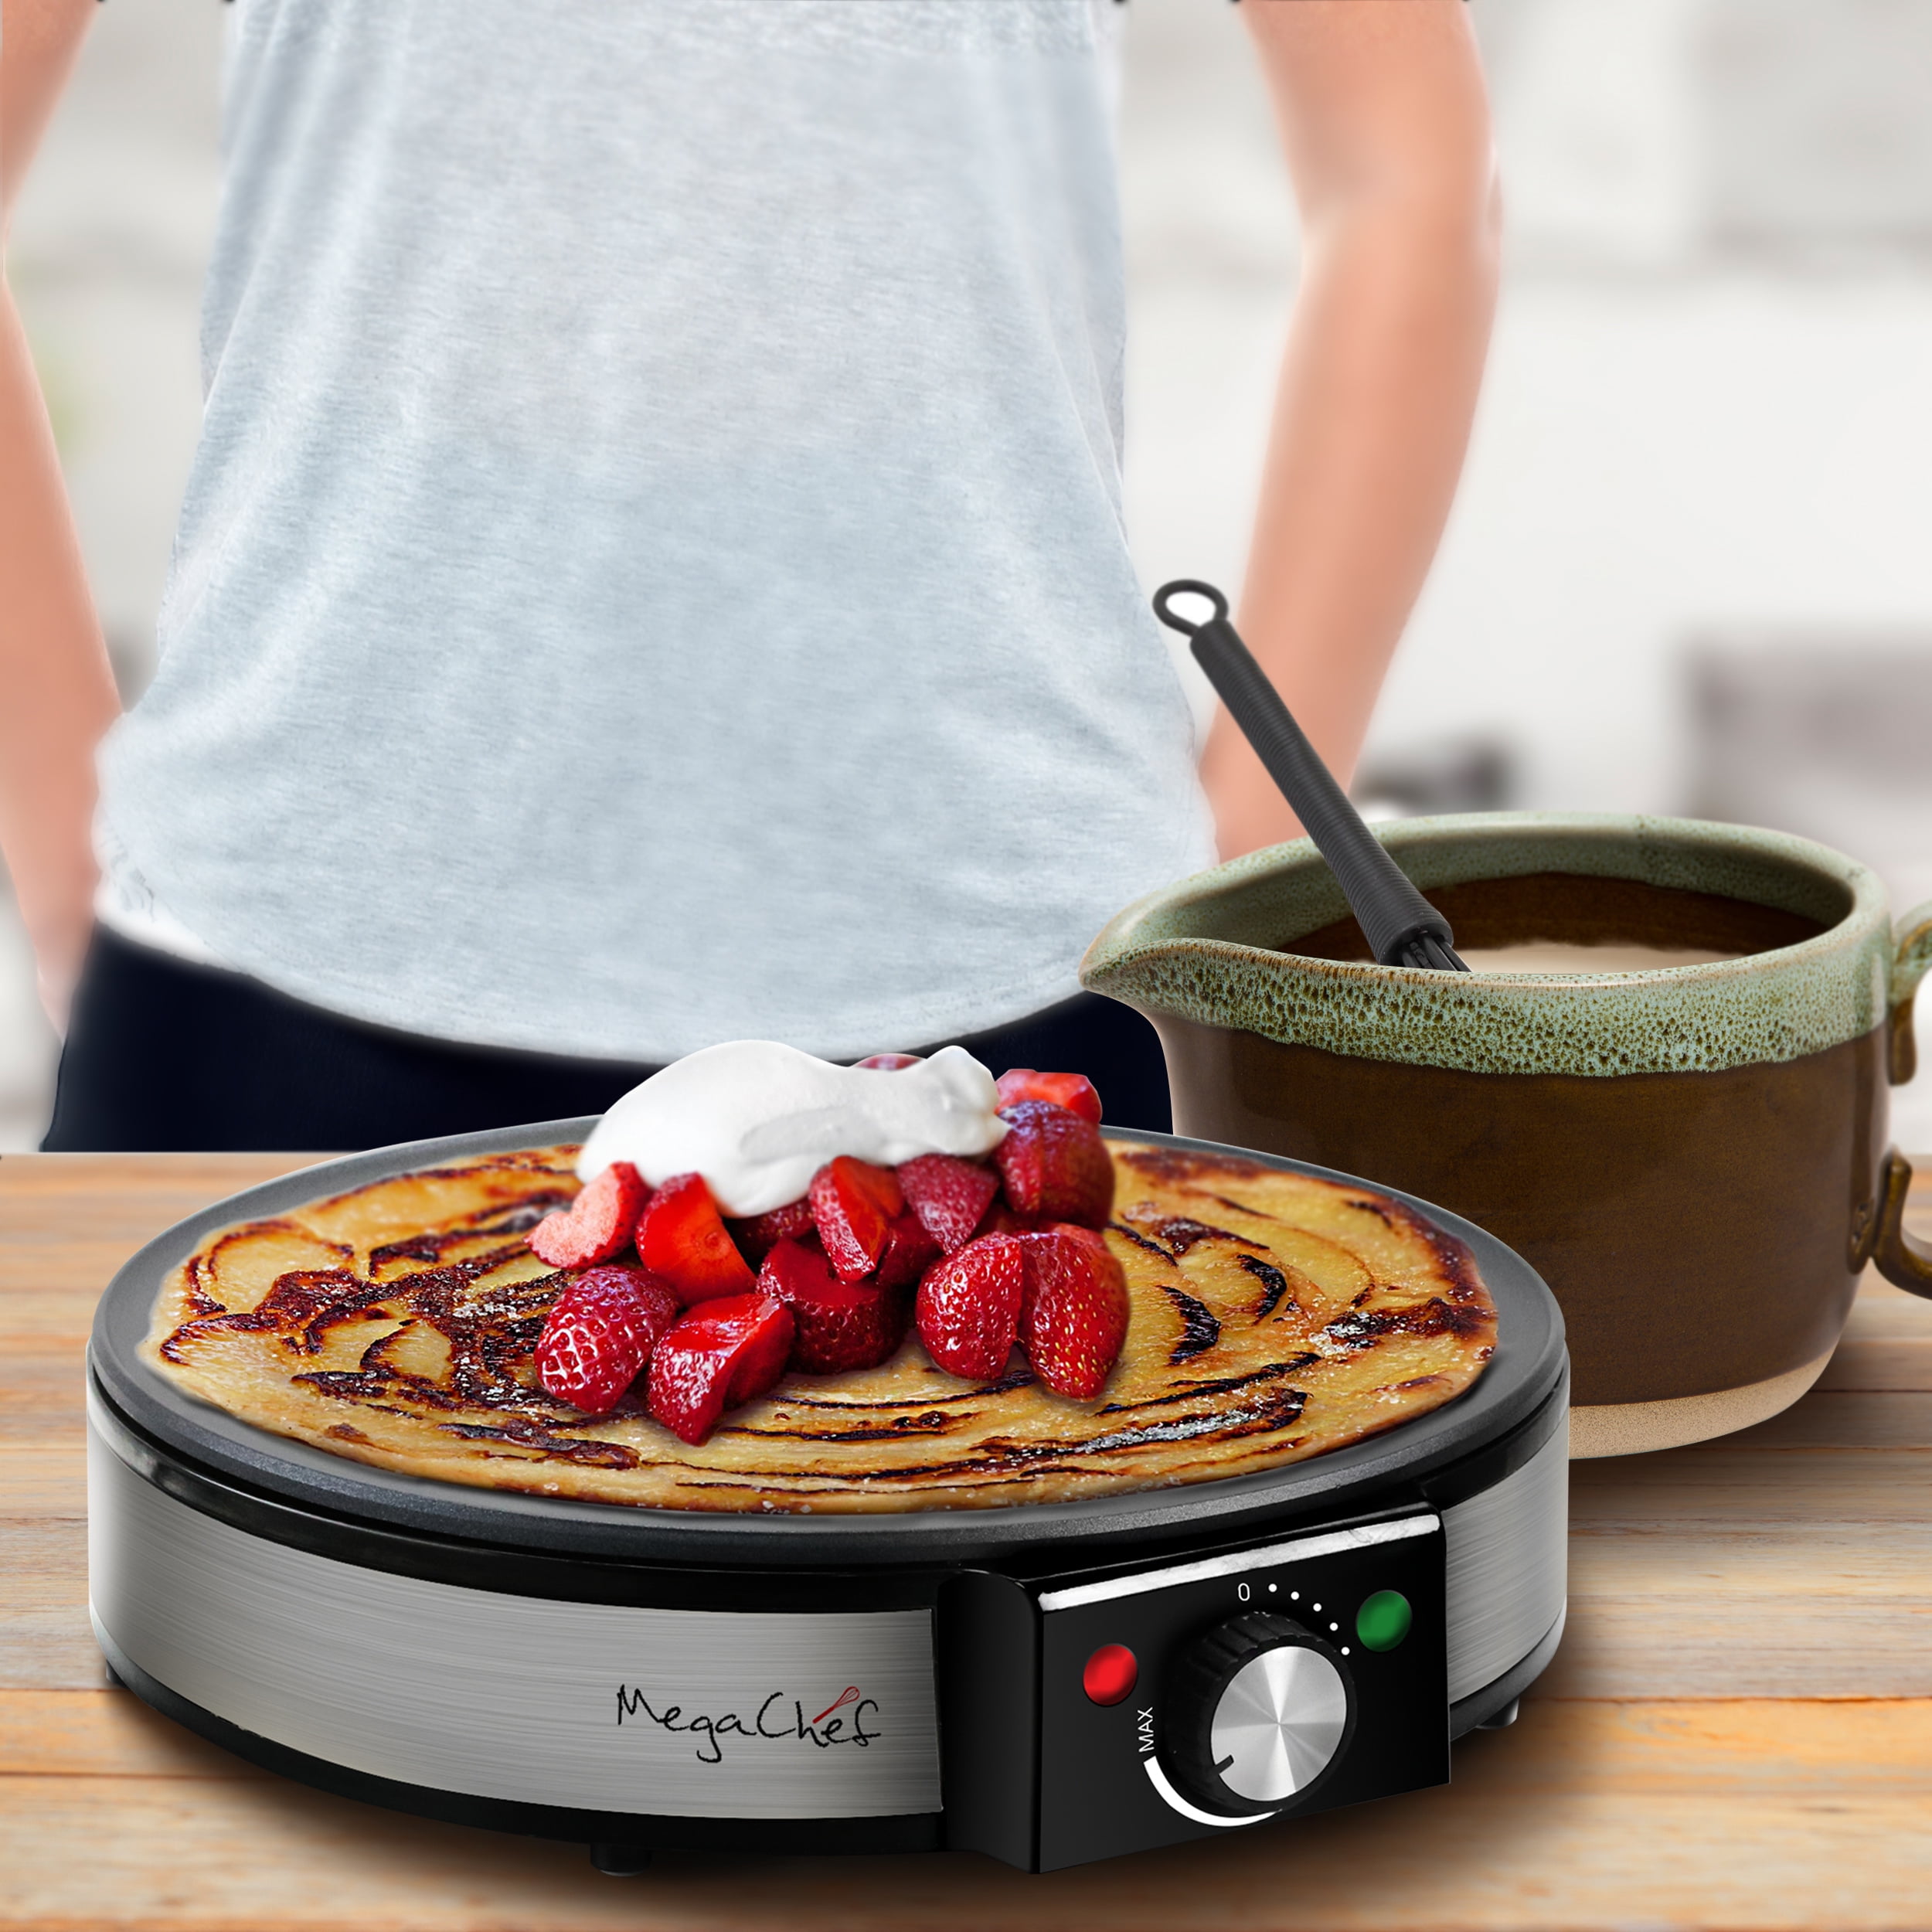  Clockitchen Pancake Pan Nonstick Griddle Pancake Maker